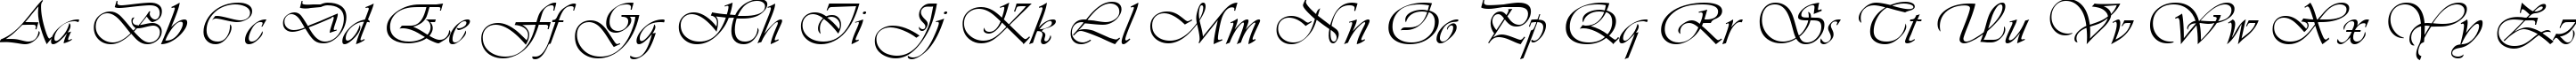 Пример написания английского алфавита шрифтом Vianta